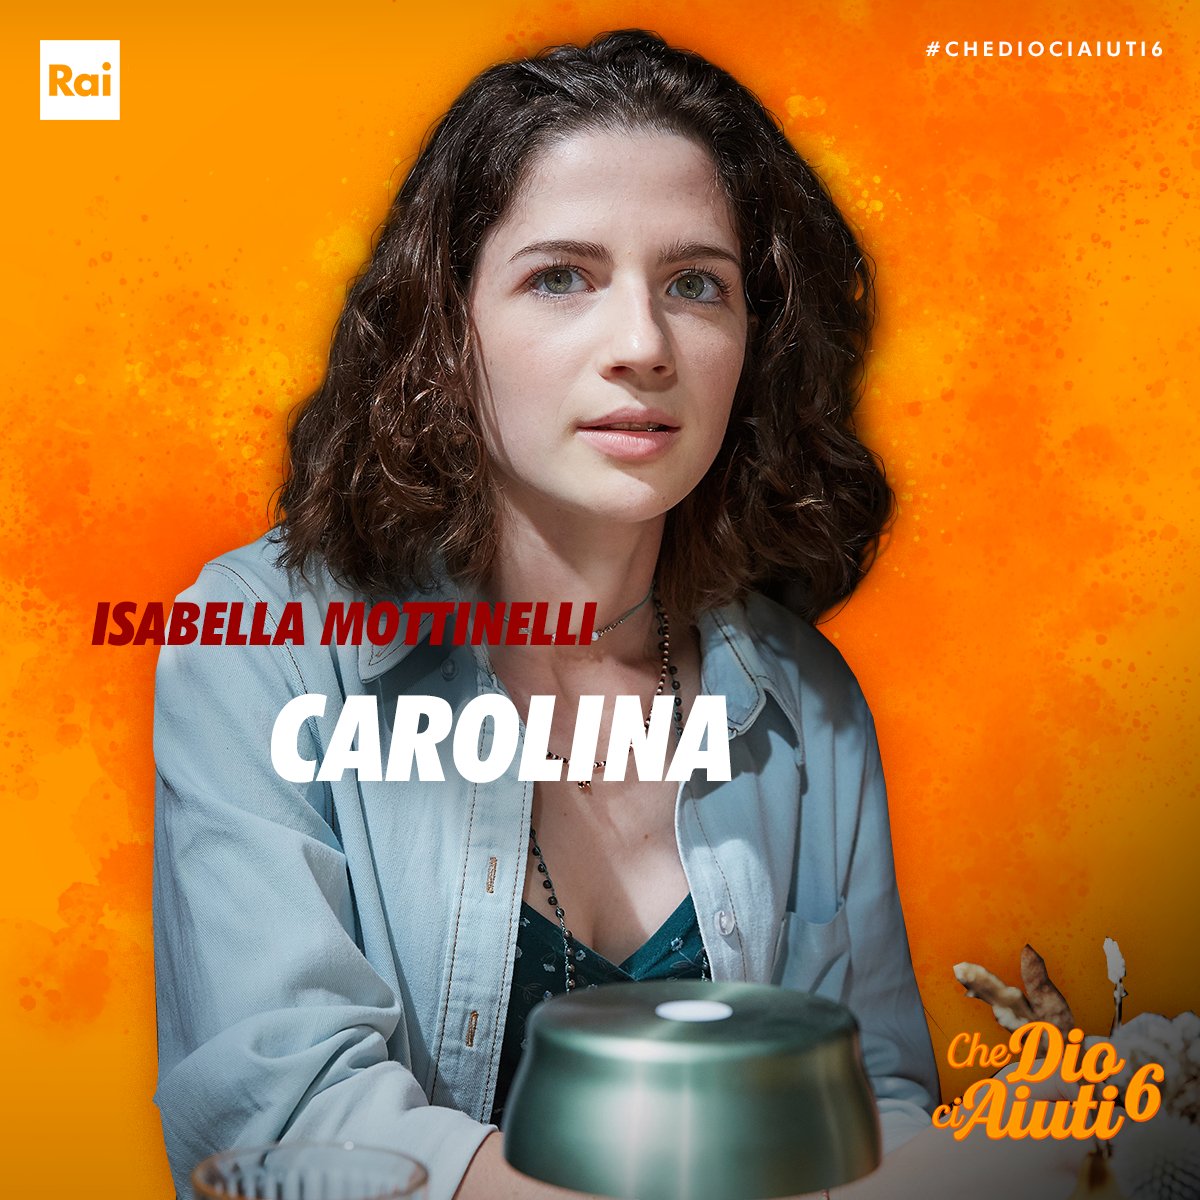 Isabella Mottinelli: Chi è Carolina di Che Dio ci aiuti 6? età, studi, Instagram - Tutto su di lei - FOTO